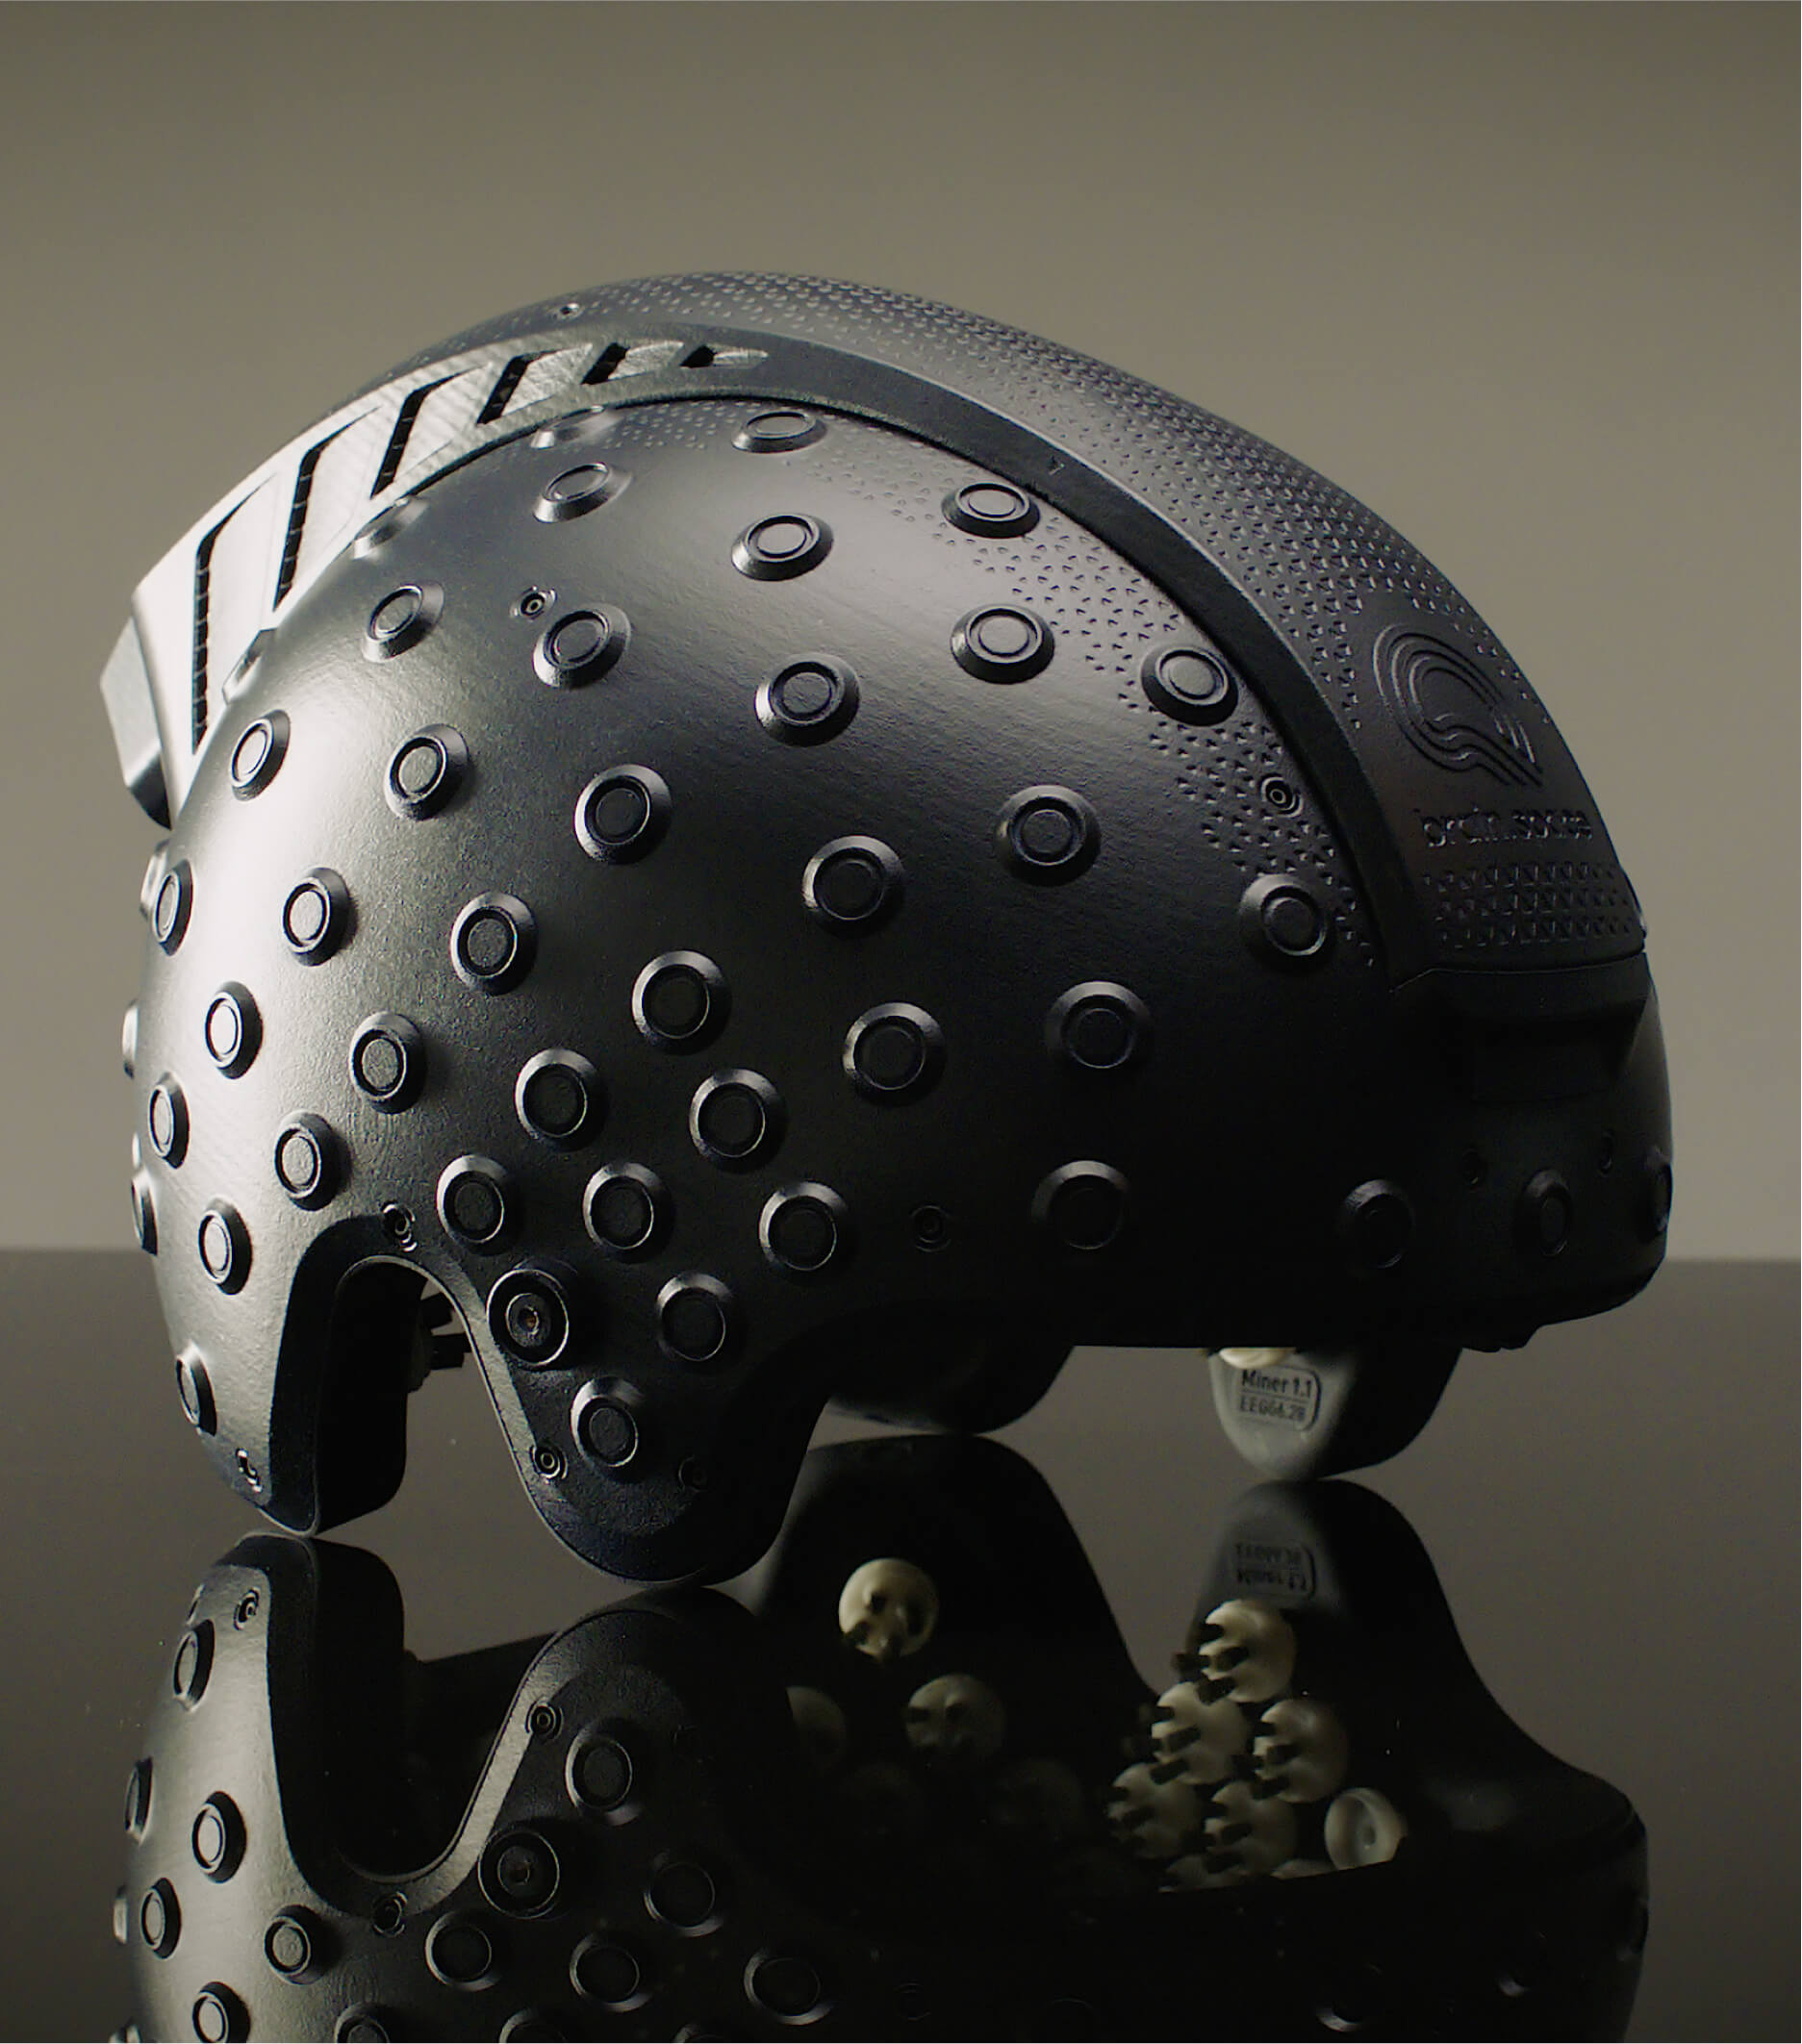 The EEG-enabled space helmet. (Photo: brain.space)